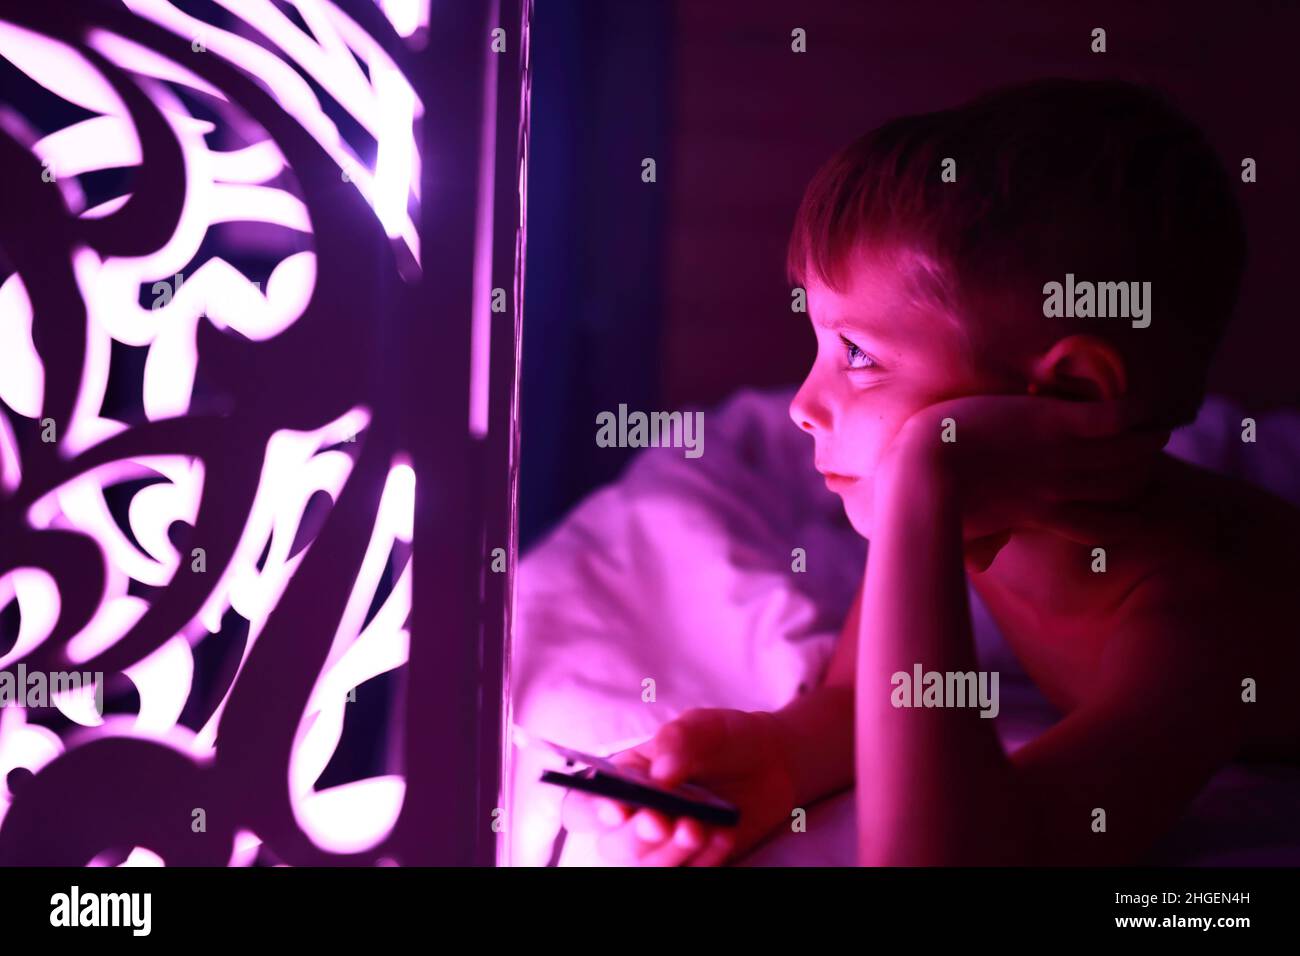 Kind Schalter Lampe Stockfotos und -bilder Kaufen - Alamy